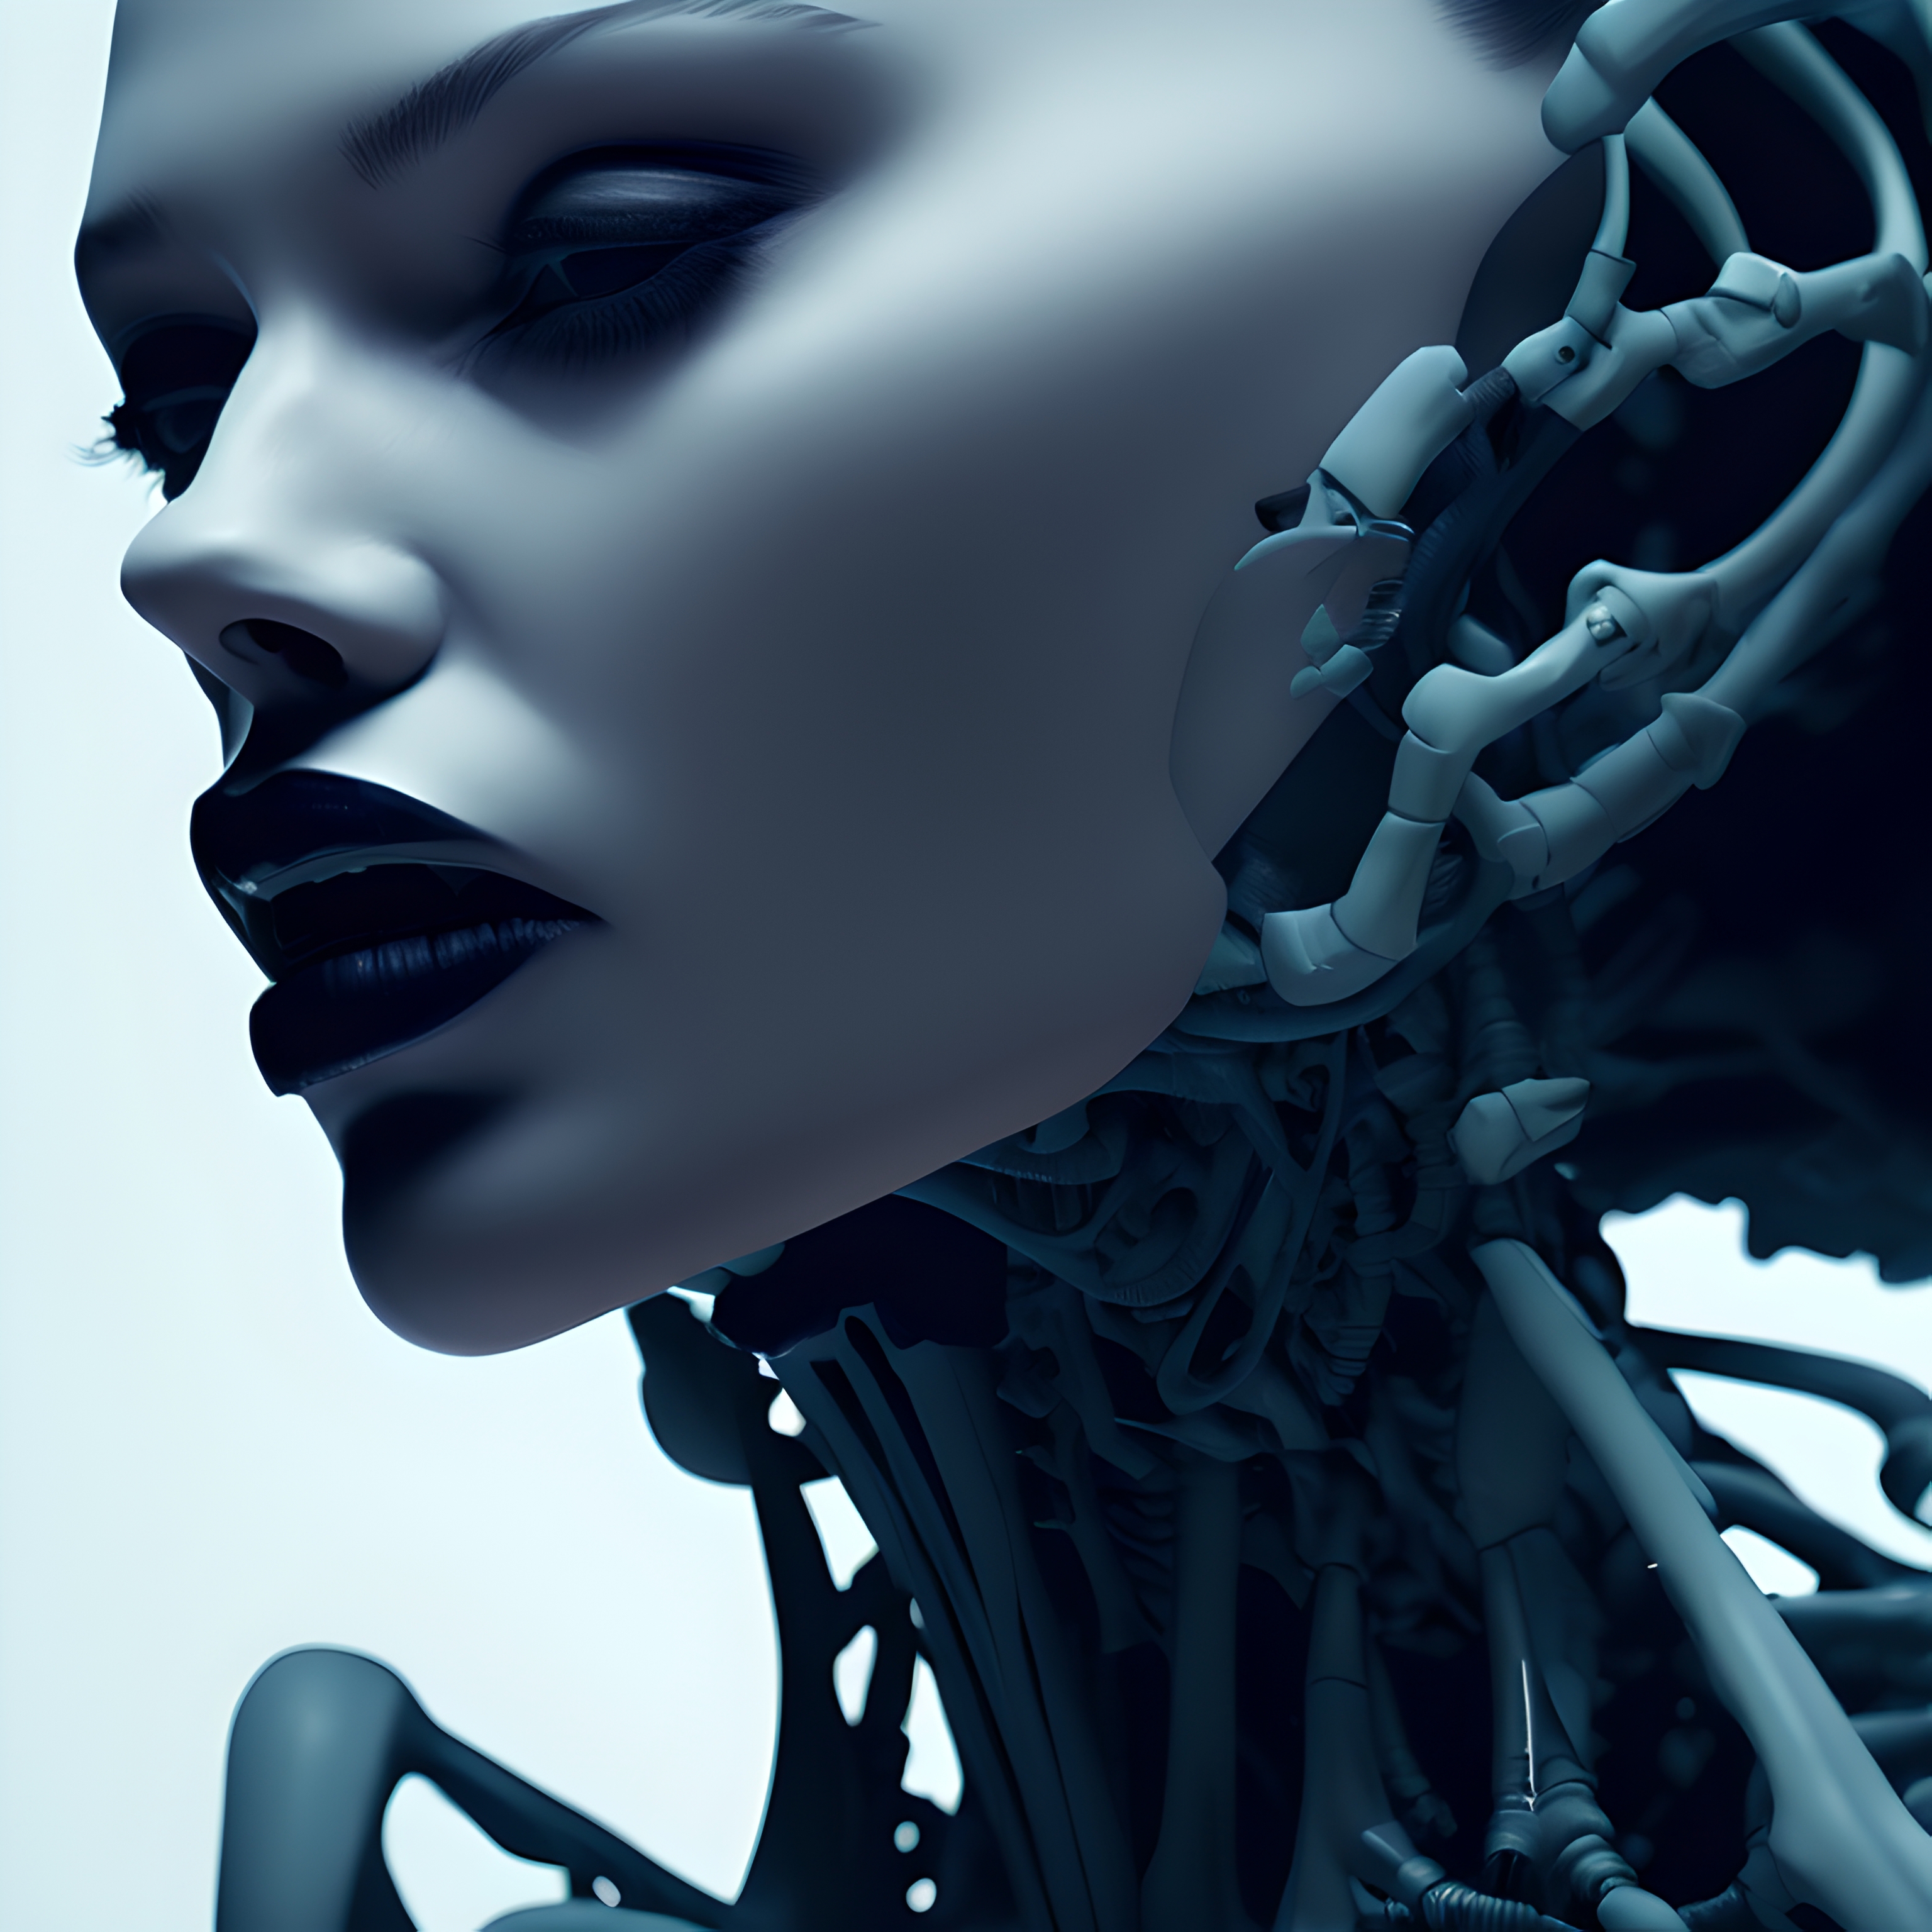 AI model image by Error_Riser